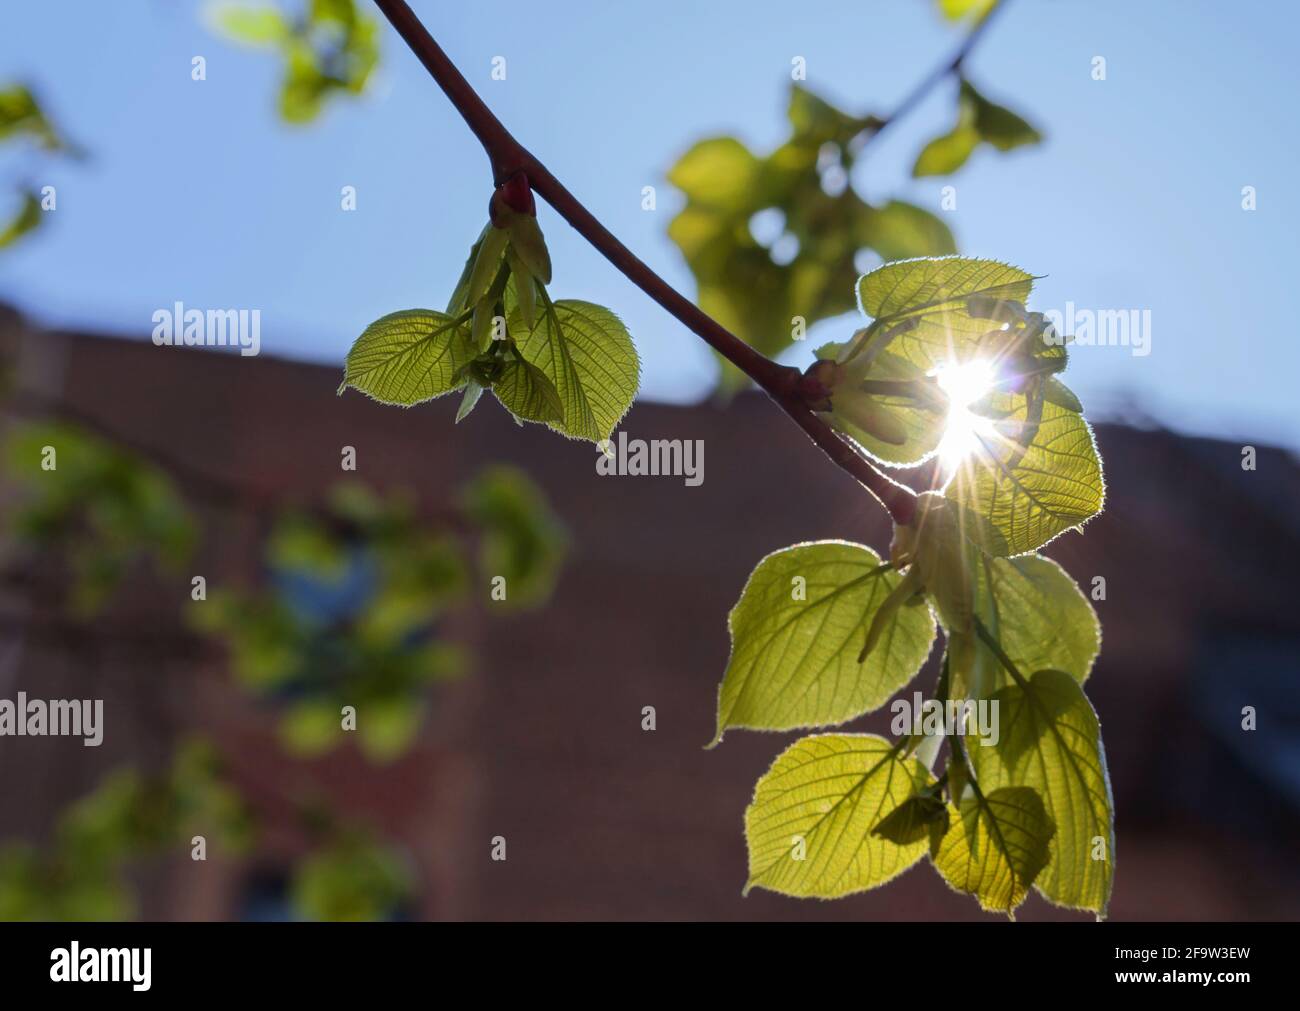 Eine doppelte Sonneneinstrahlung guckst durch einen hängenden Ast vor dem Hintergrund eines Ziegelgebäudes und eines blauen Himmels, Konzept eines neuen Erwachens oder des Sehens des Lichts Stockfoto